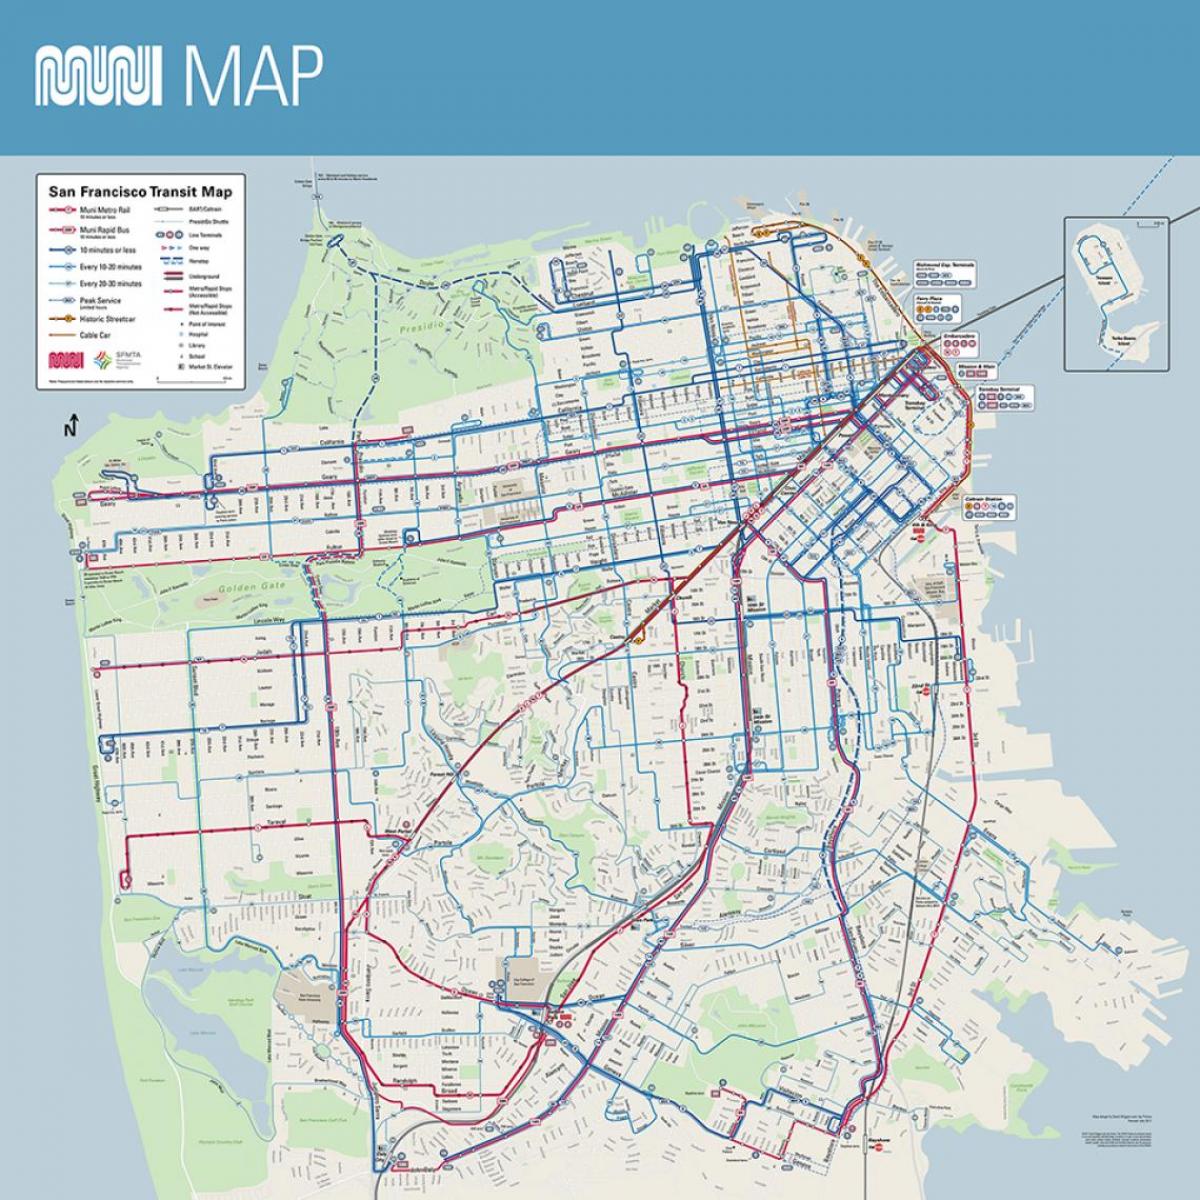 Kort over SF muni plakat